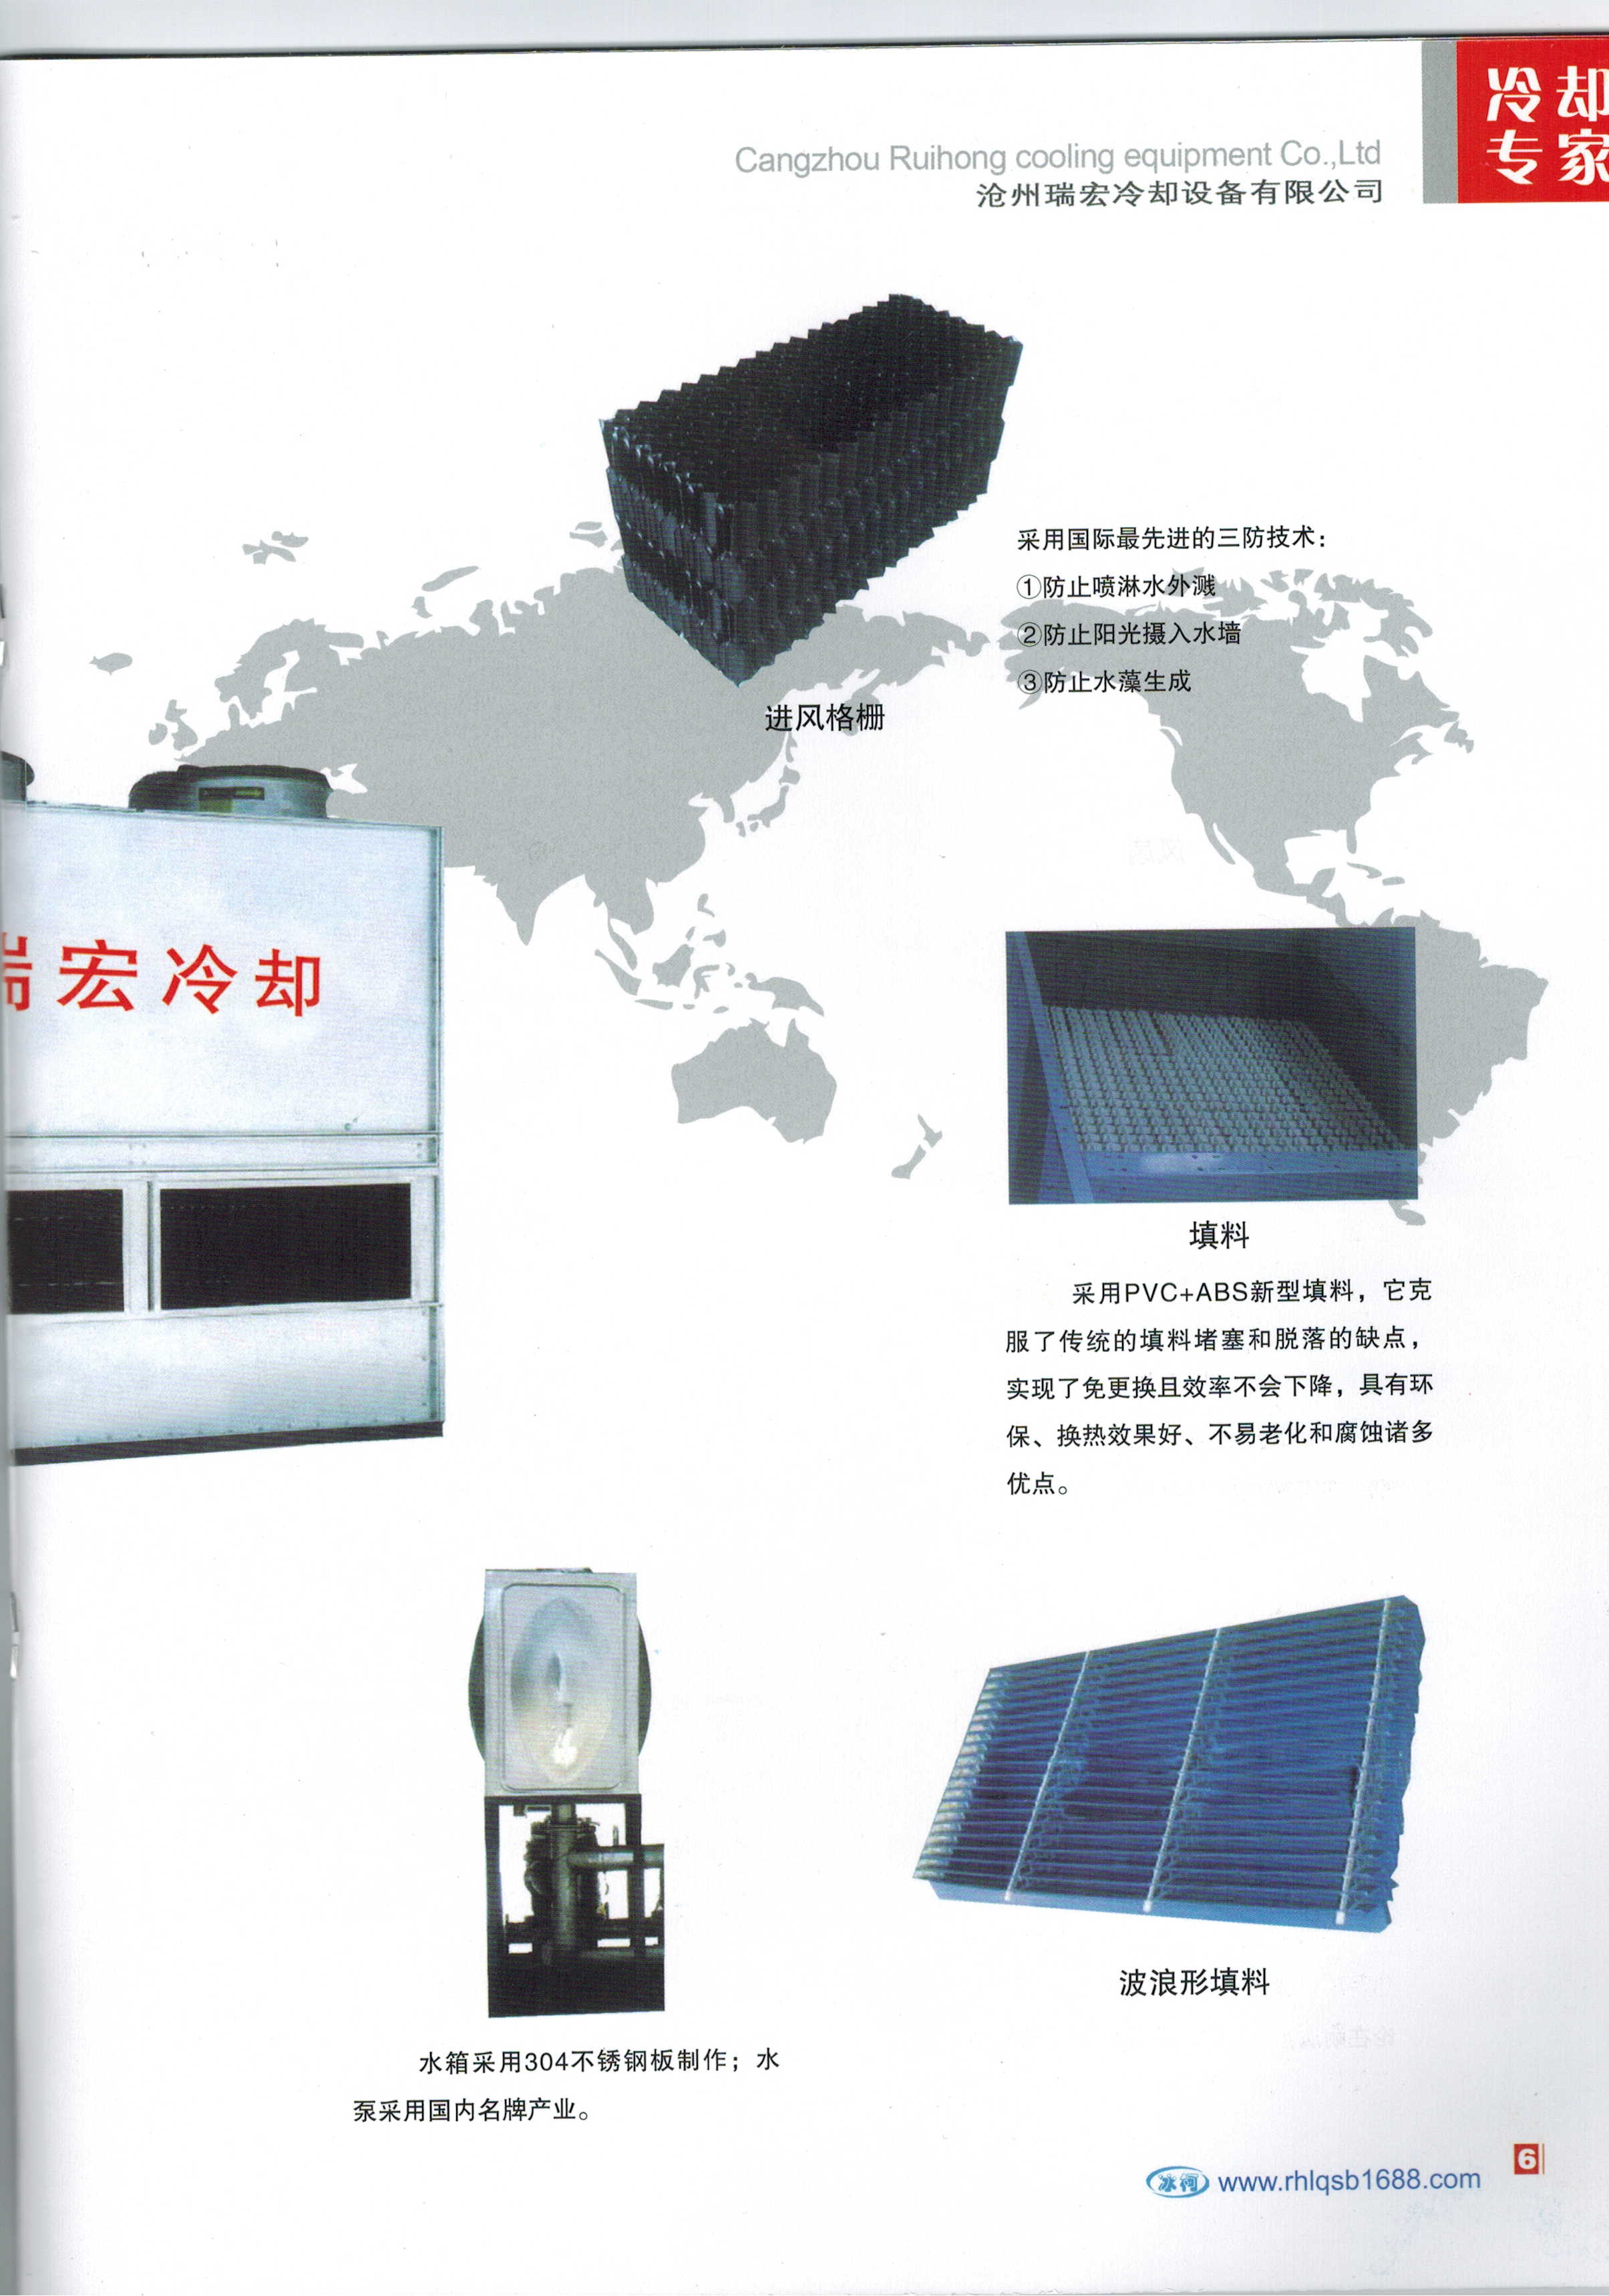 供应用于降温的冷却设备 用于铸造行业的冷却设备